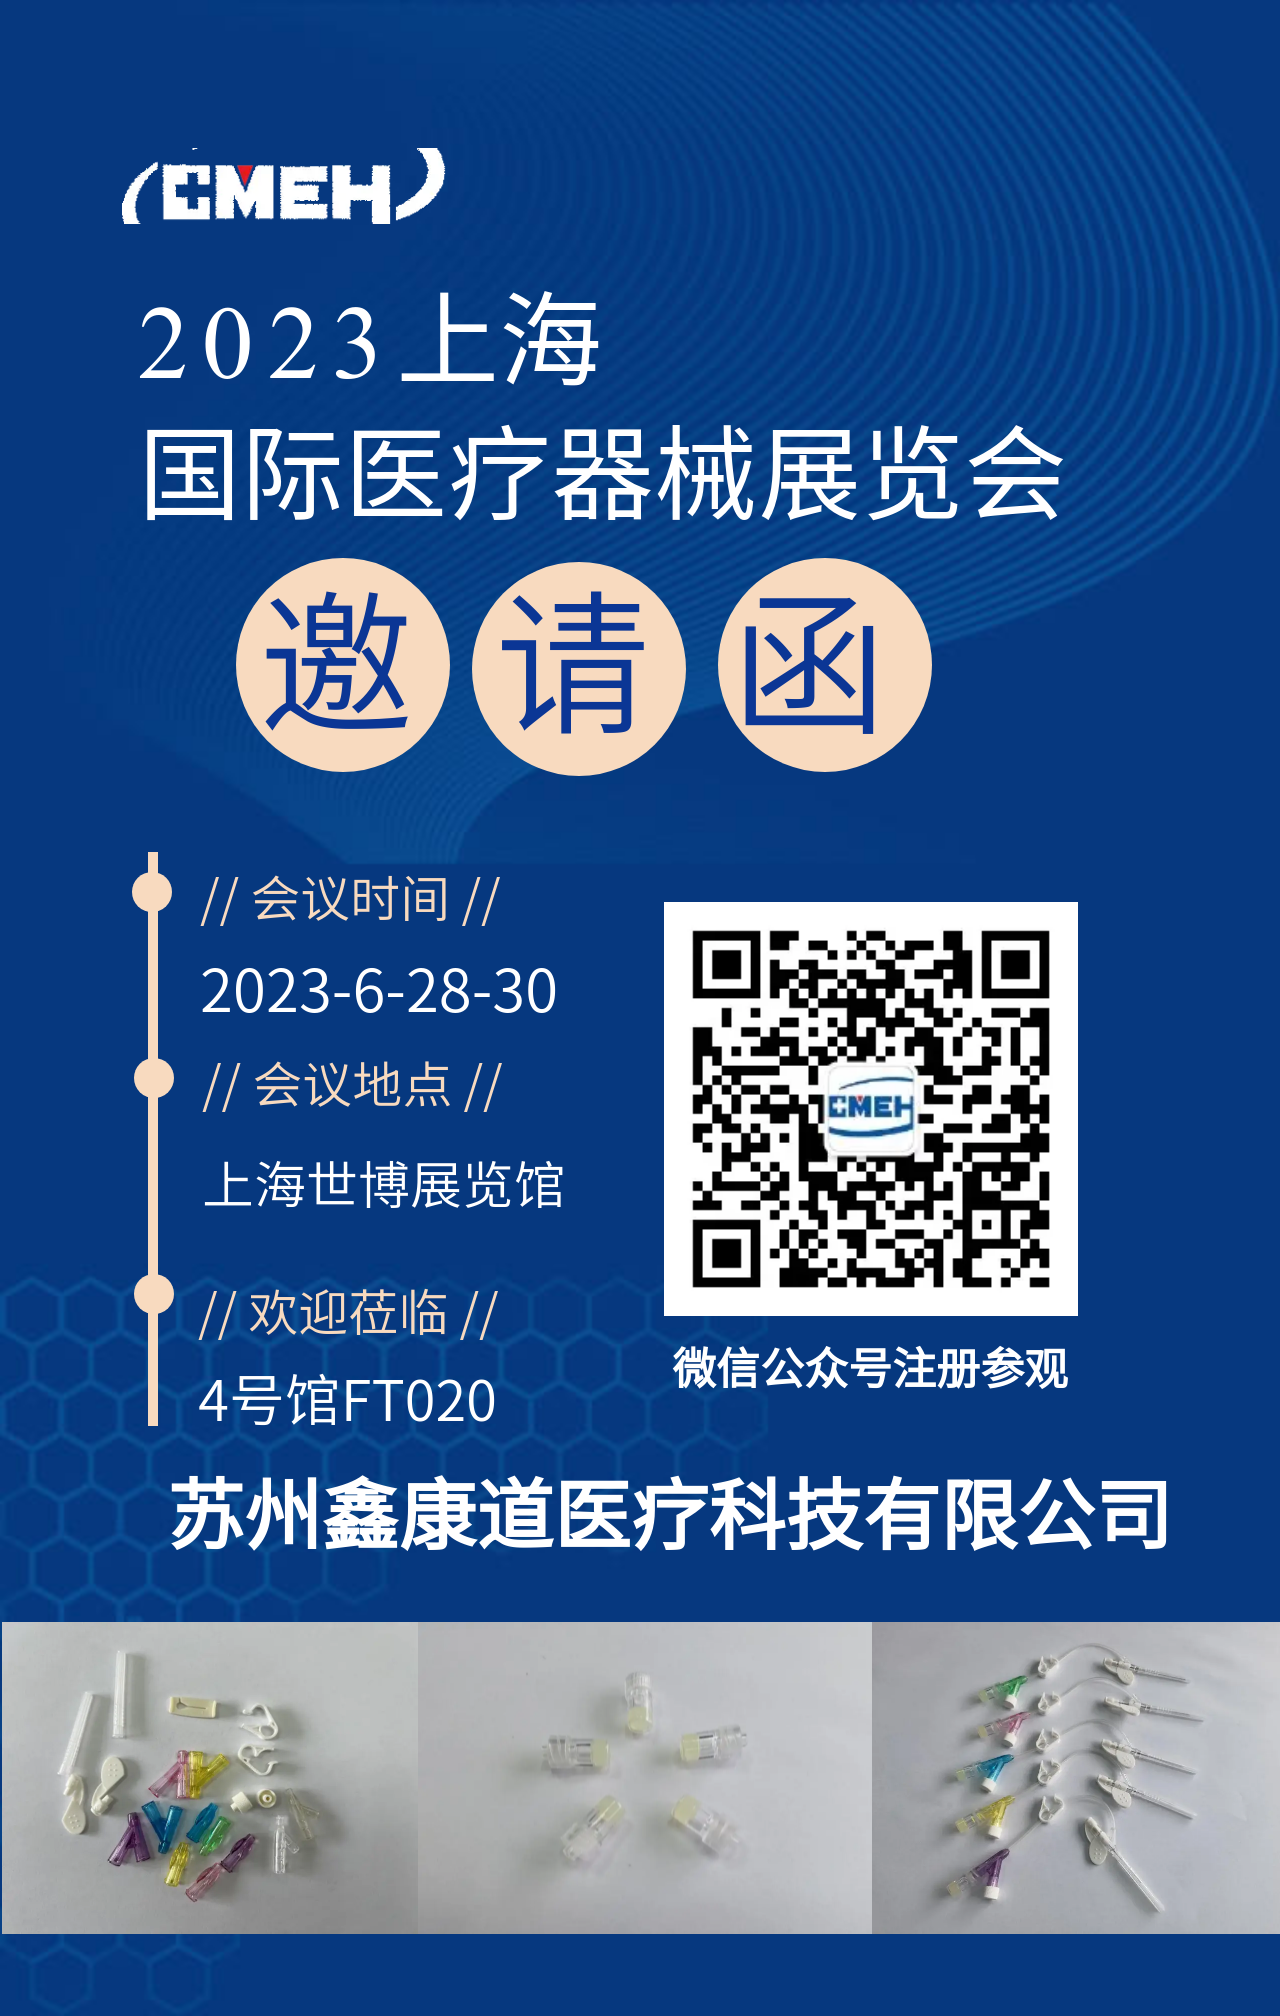 展商推荐：苏州鑫康道医疗科技有限公司邀您参观上海医疗博览会